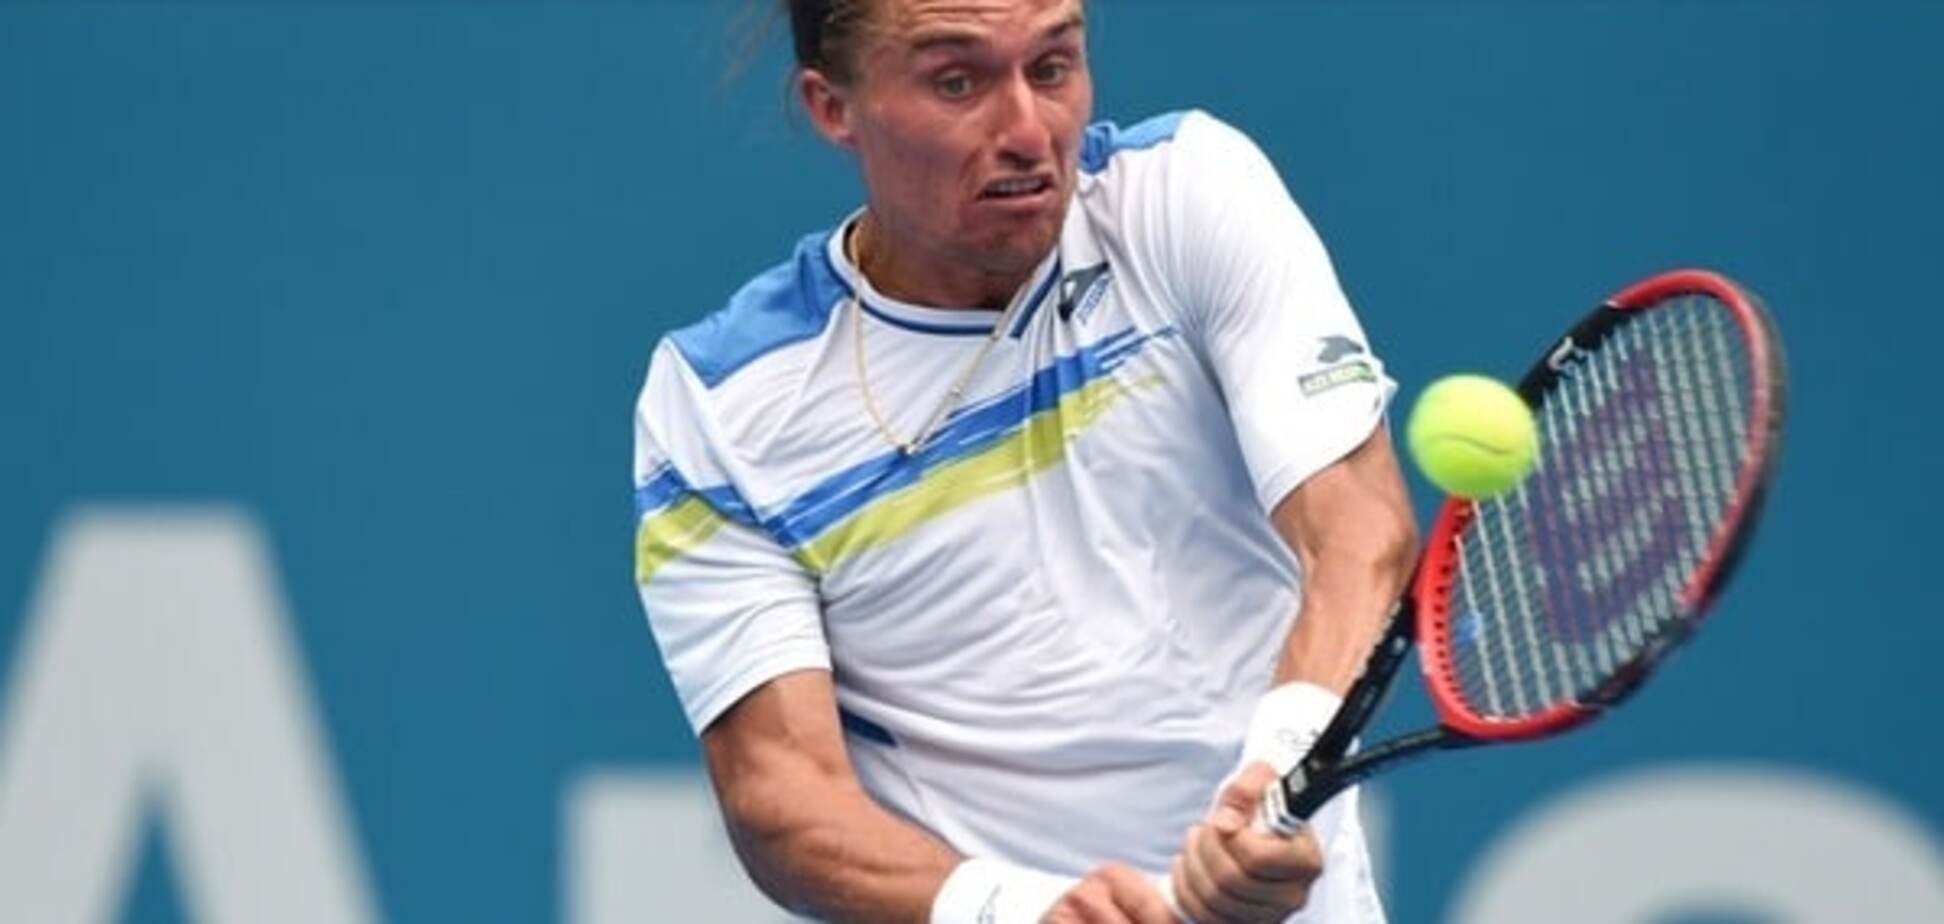 Украинец вывел из себя звезду мирового тенниса: видео инцидента